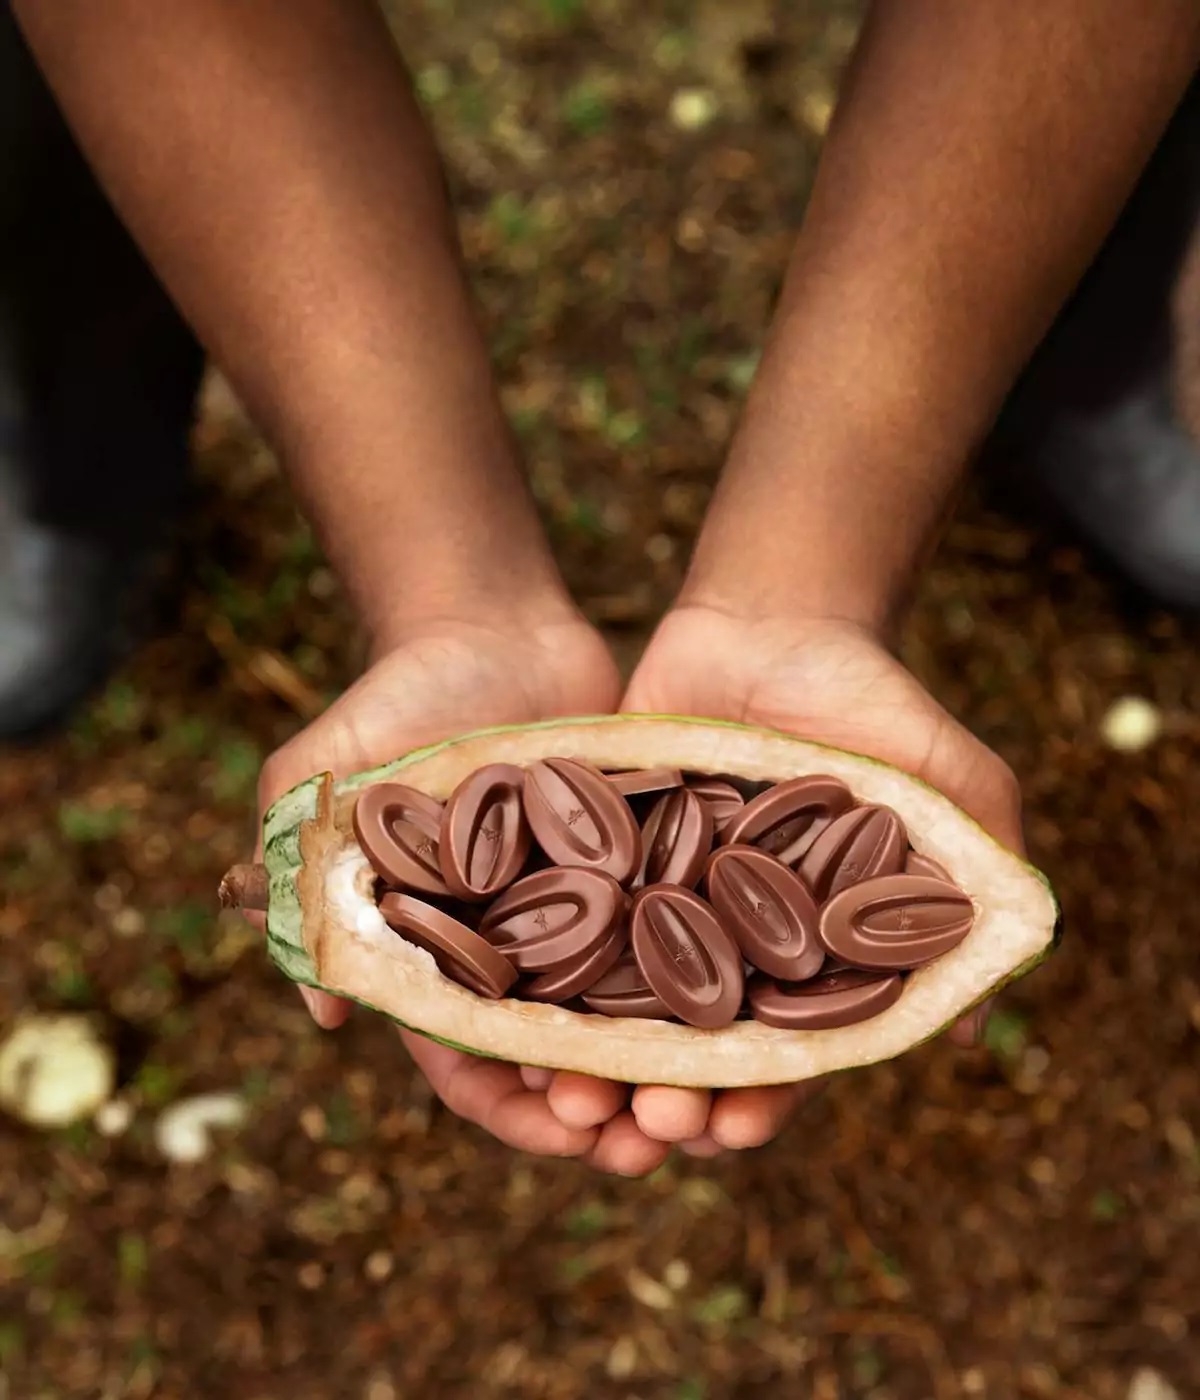 Chocolat de Couverture Noir Equatoriale 55% 1kg Valrhona -  , Achat, Vente